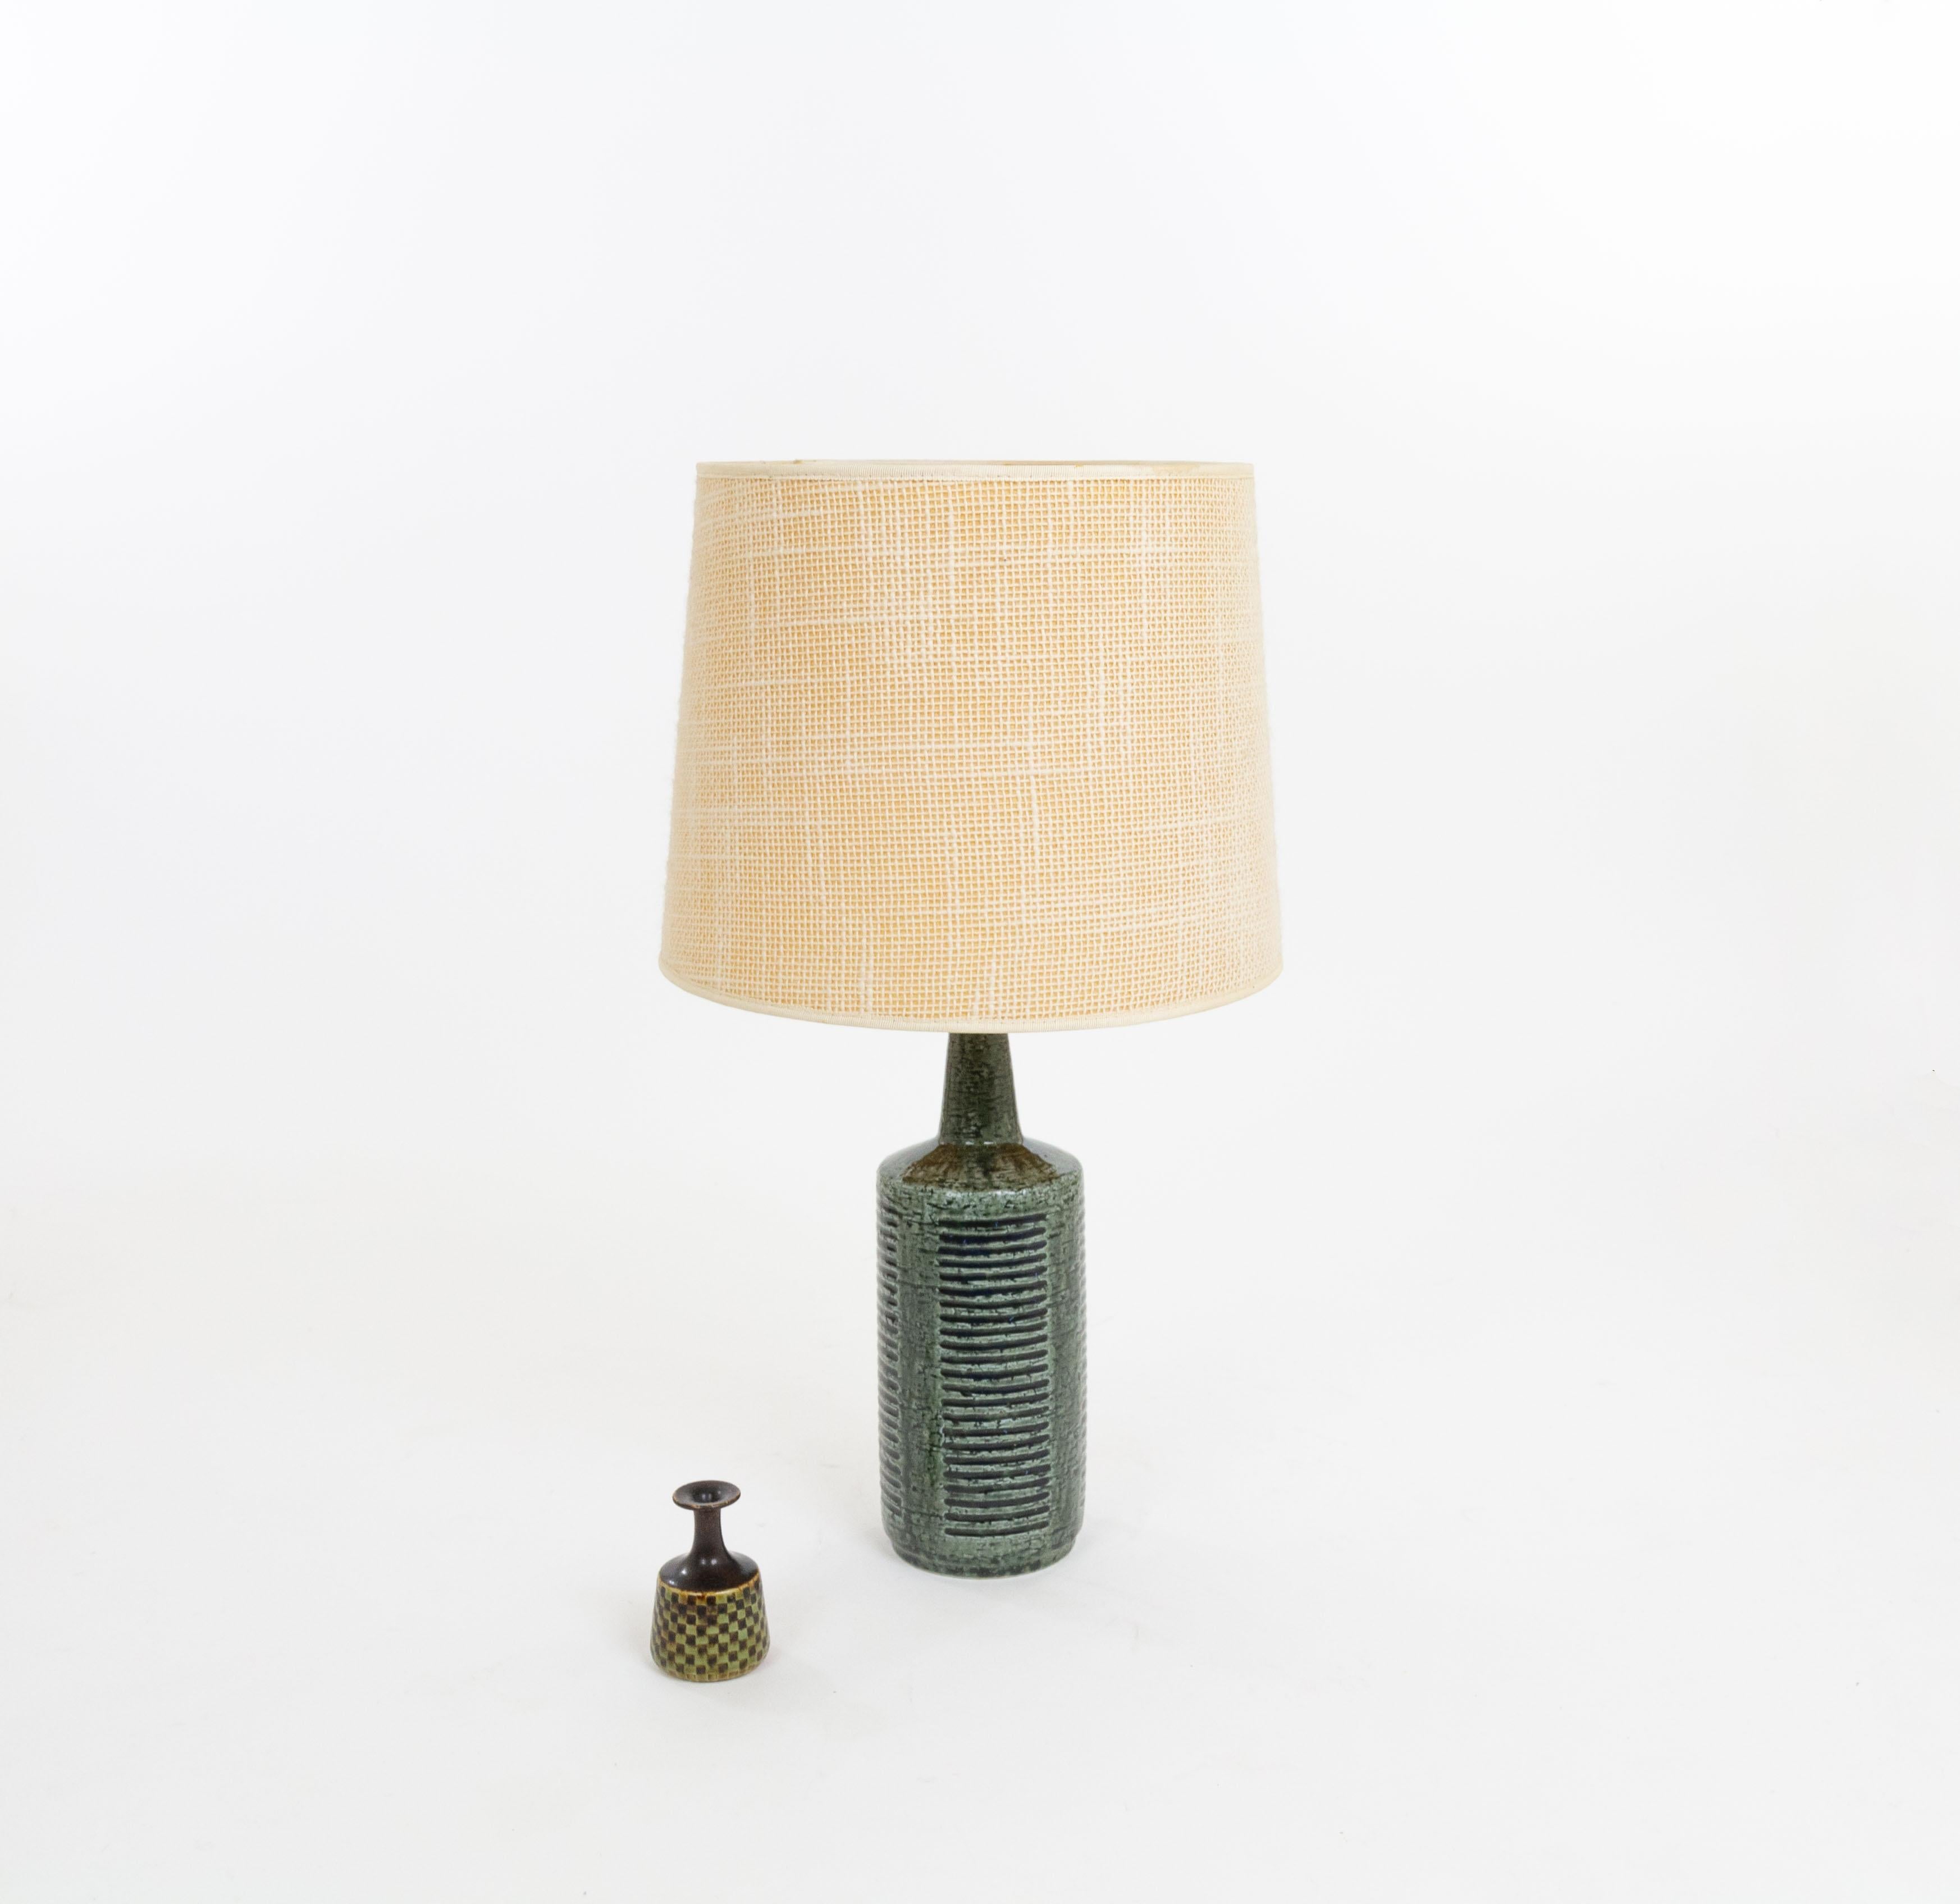 Glazed Green & Charcoal DL/30 table lamp by Linnemann-Schmidt for Palshus, 1960s For Sale